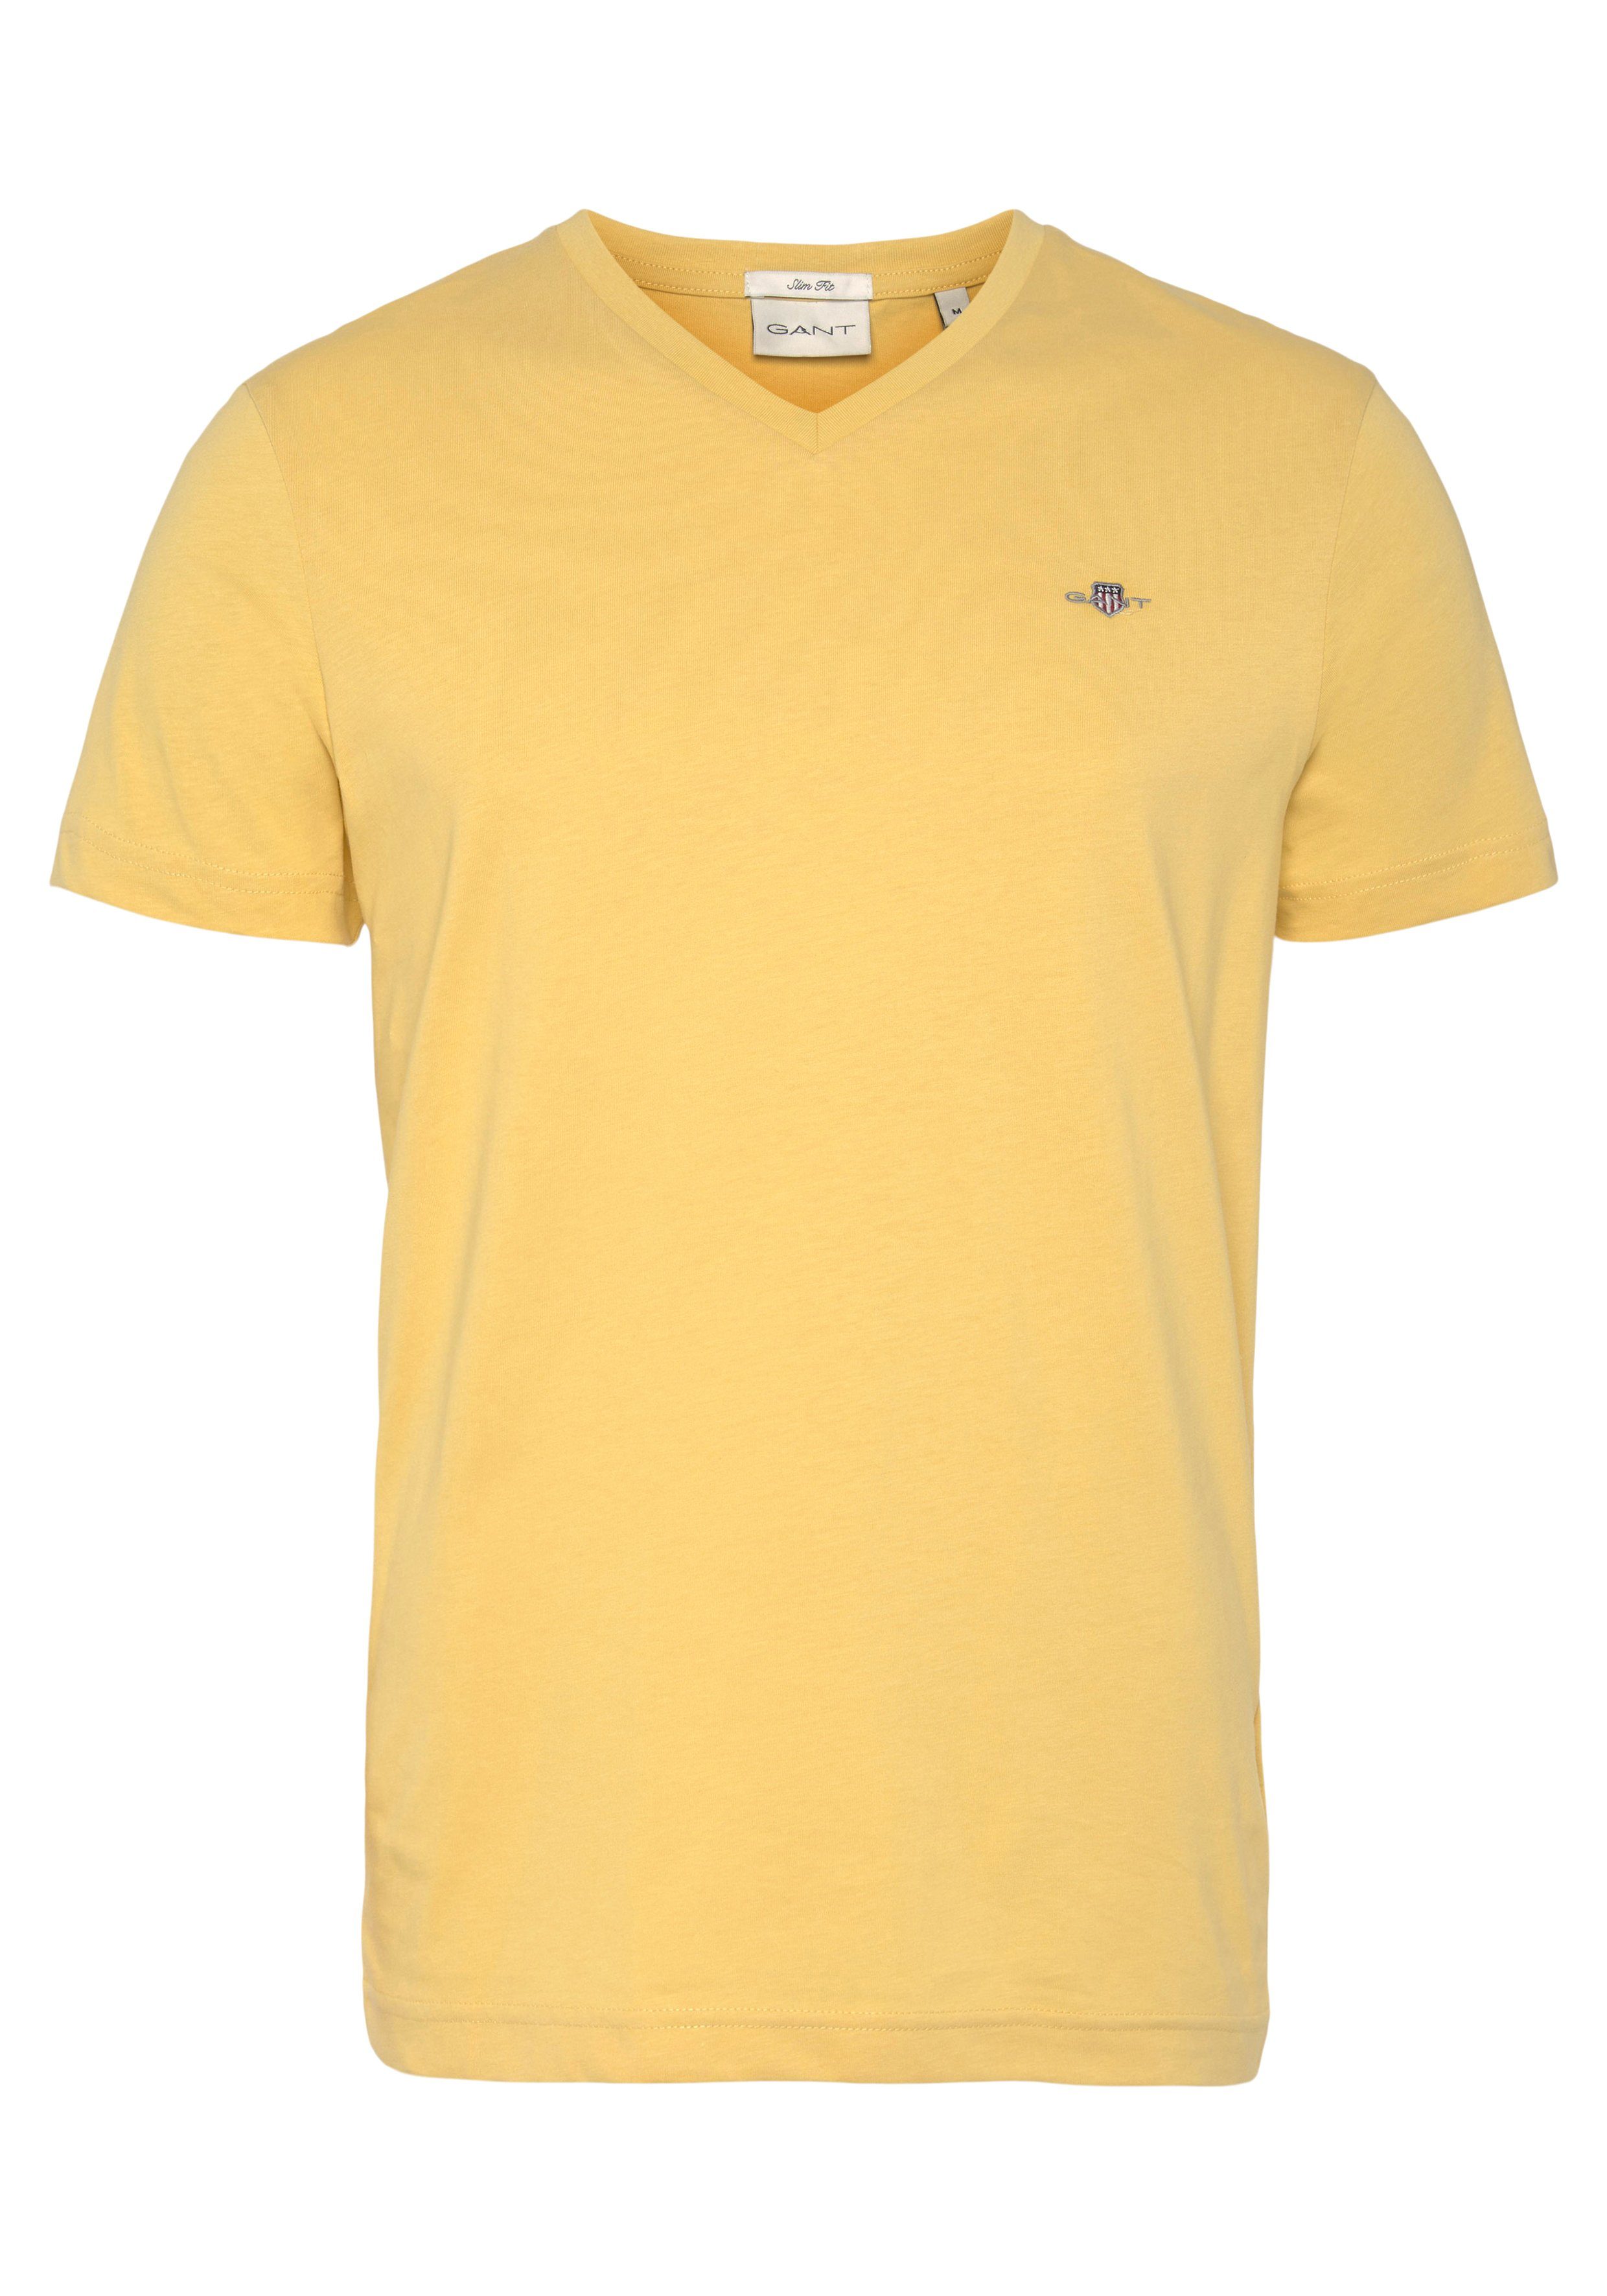 T-Shirt T-SHIRT auf der SHIELD Gant kleinen Logostickerei mit Brust SLIM PARCHMENT einer YELLOW V-NECK